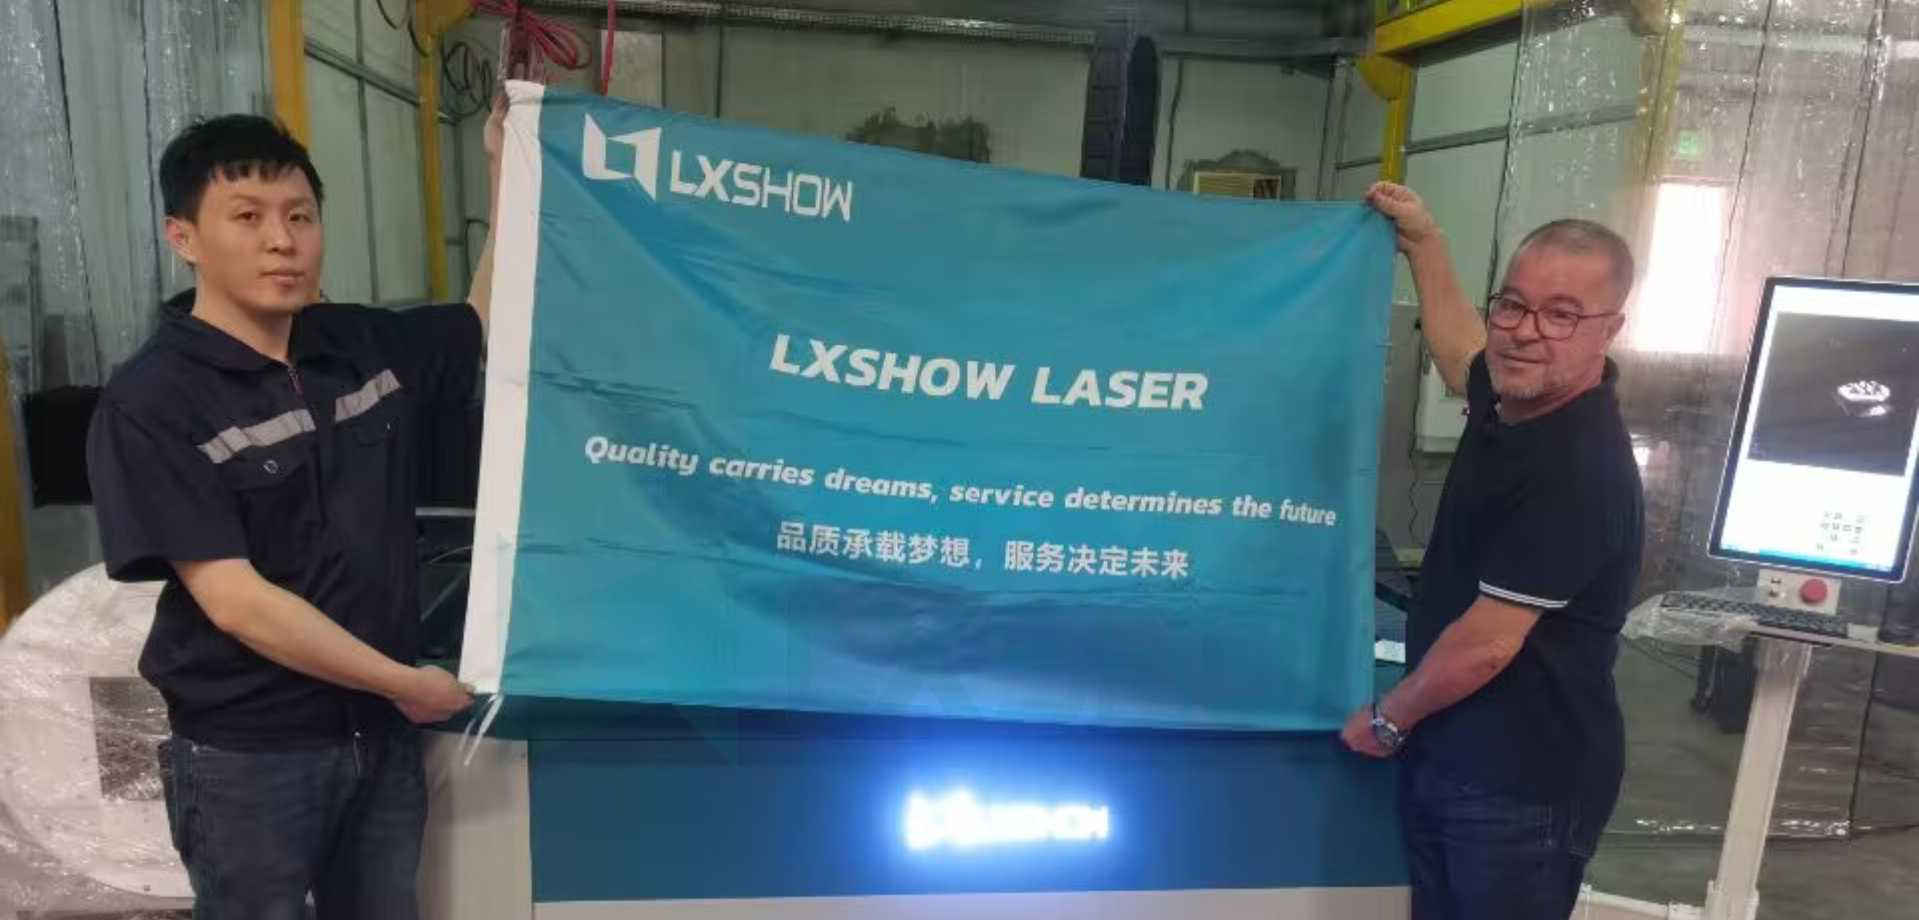 LXSHOW บริการหลังการขายที่กาตาร์ด้วยเครื่องตัดเลเซอร์โลหะ